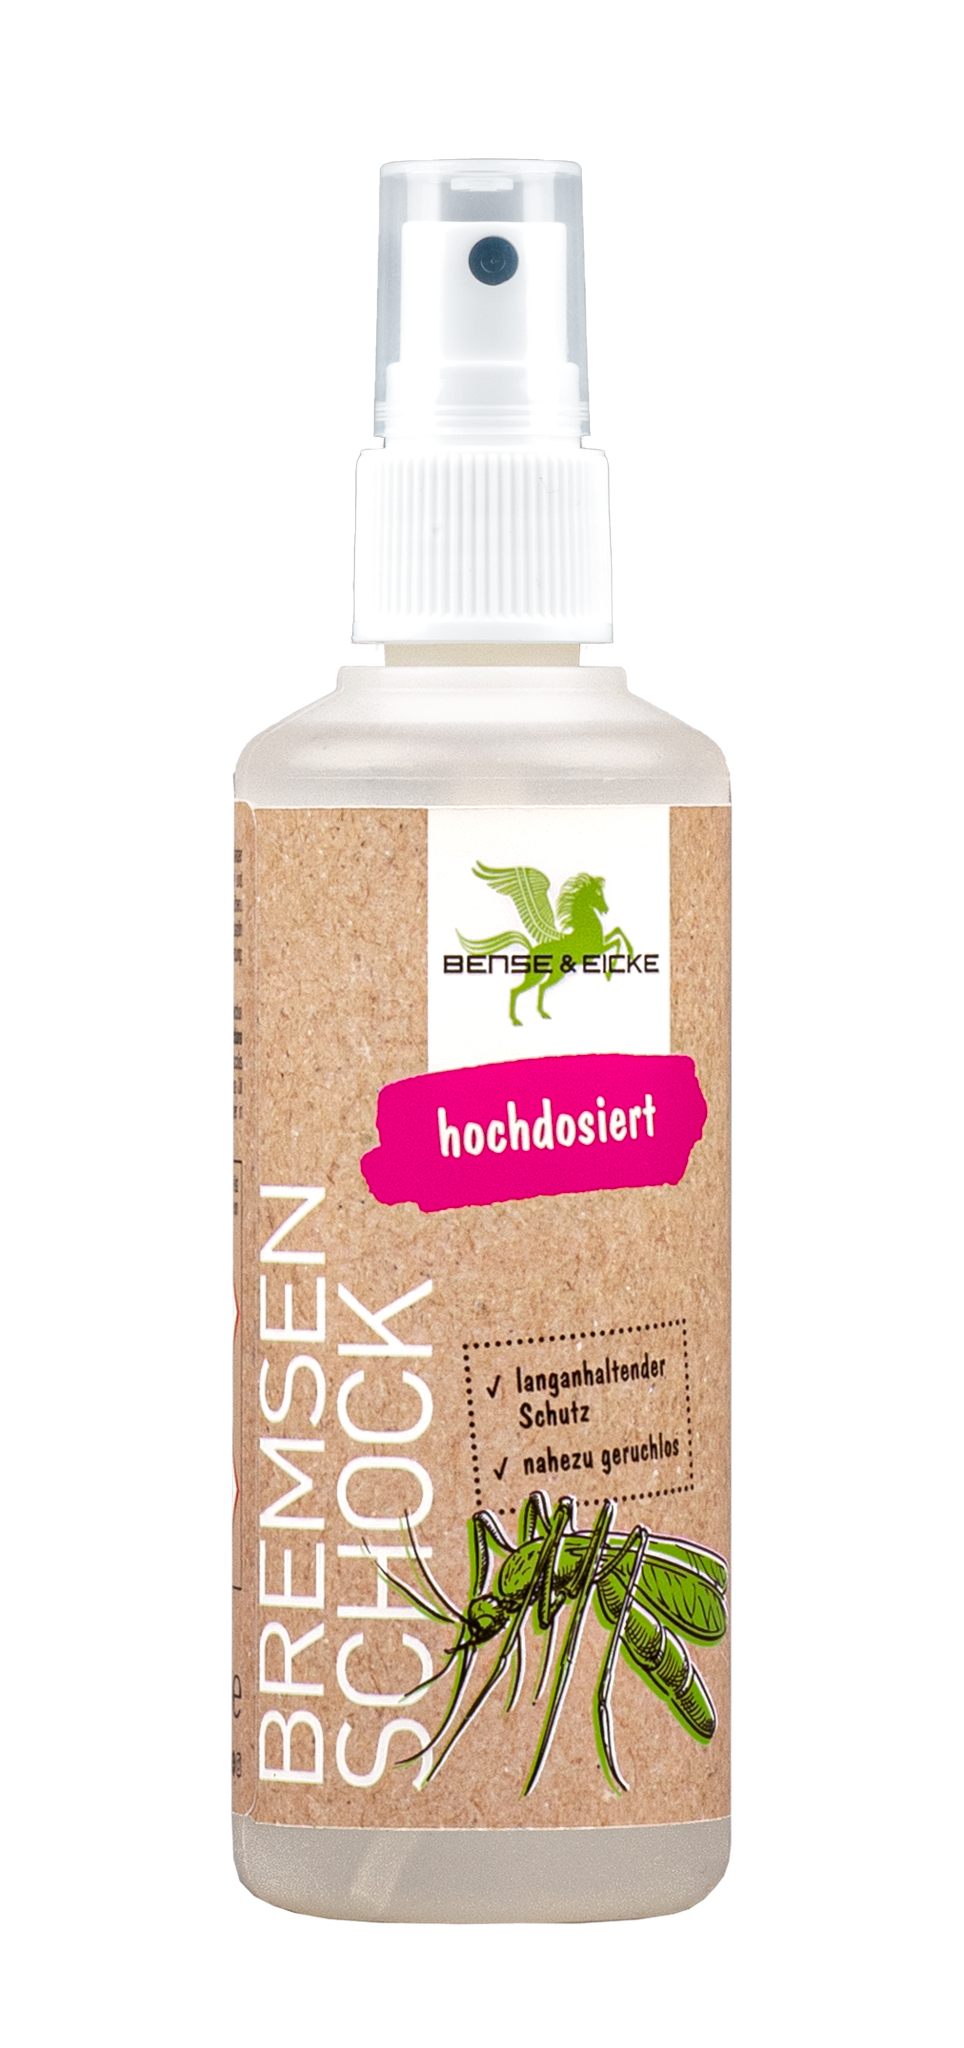 Bense & Eicke | BremsenSchock - Nahezu geruchloser Insektenschutz mit 20,6% Icaridin - 5 L